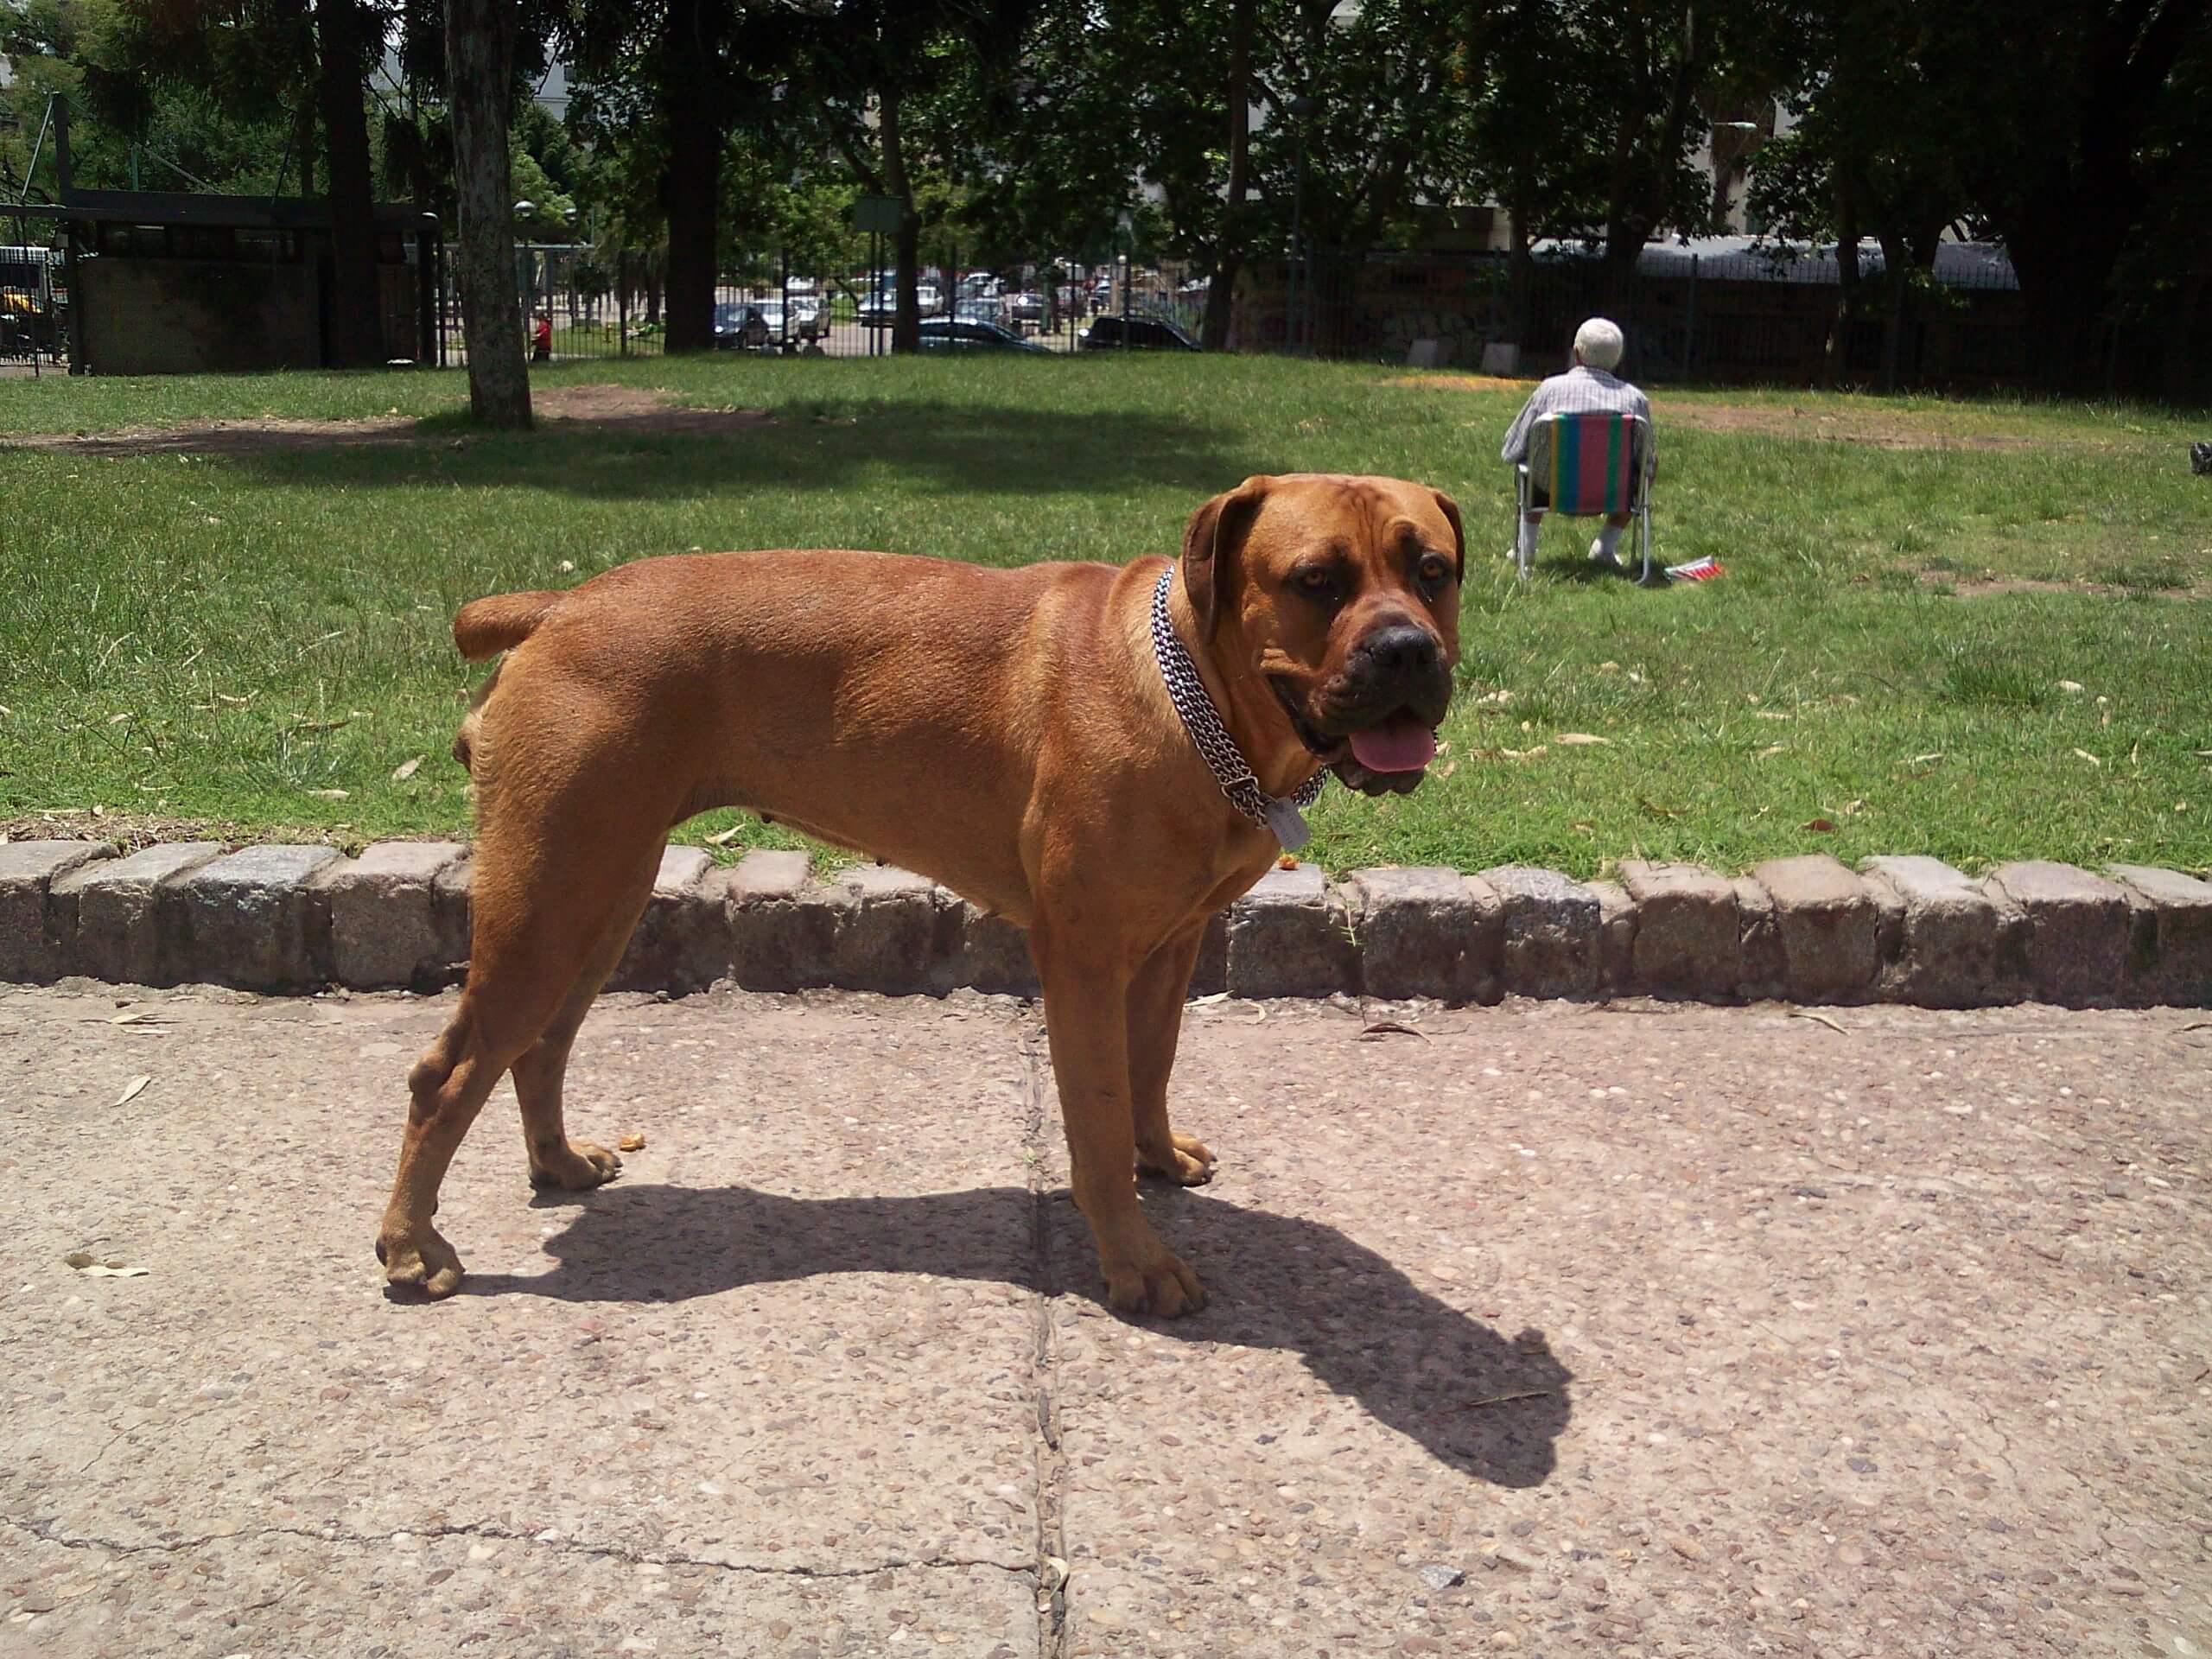 Chó ngao Nam Phi - Giống chó bị cấm nuôi ở một số quốc gia